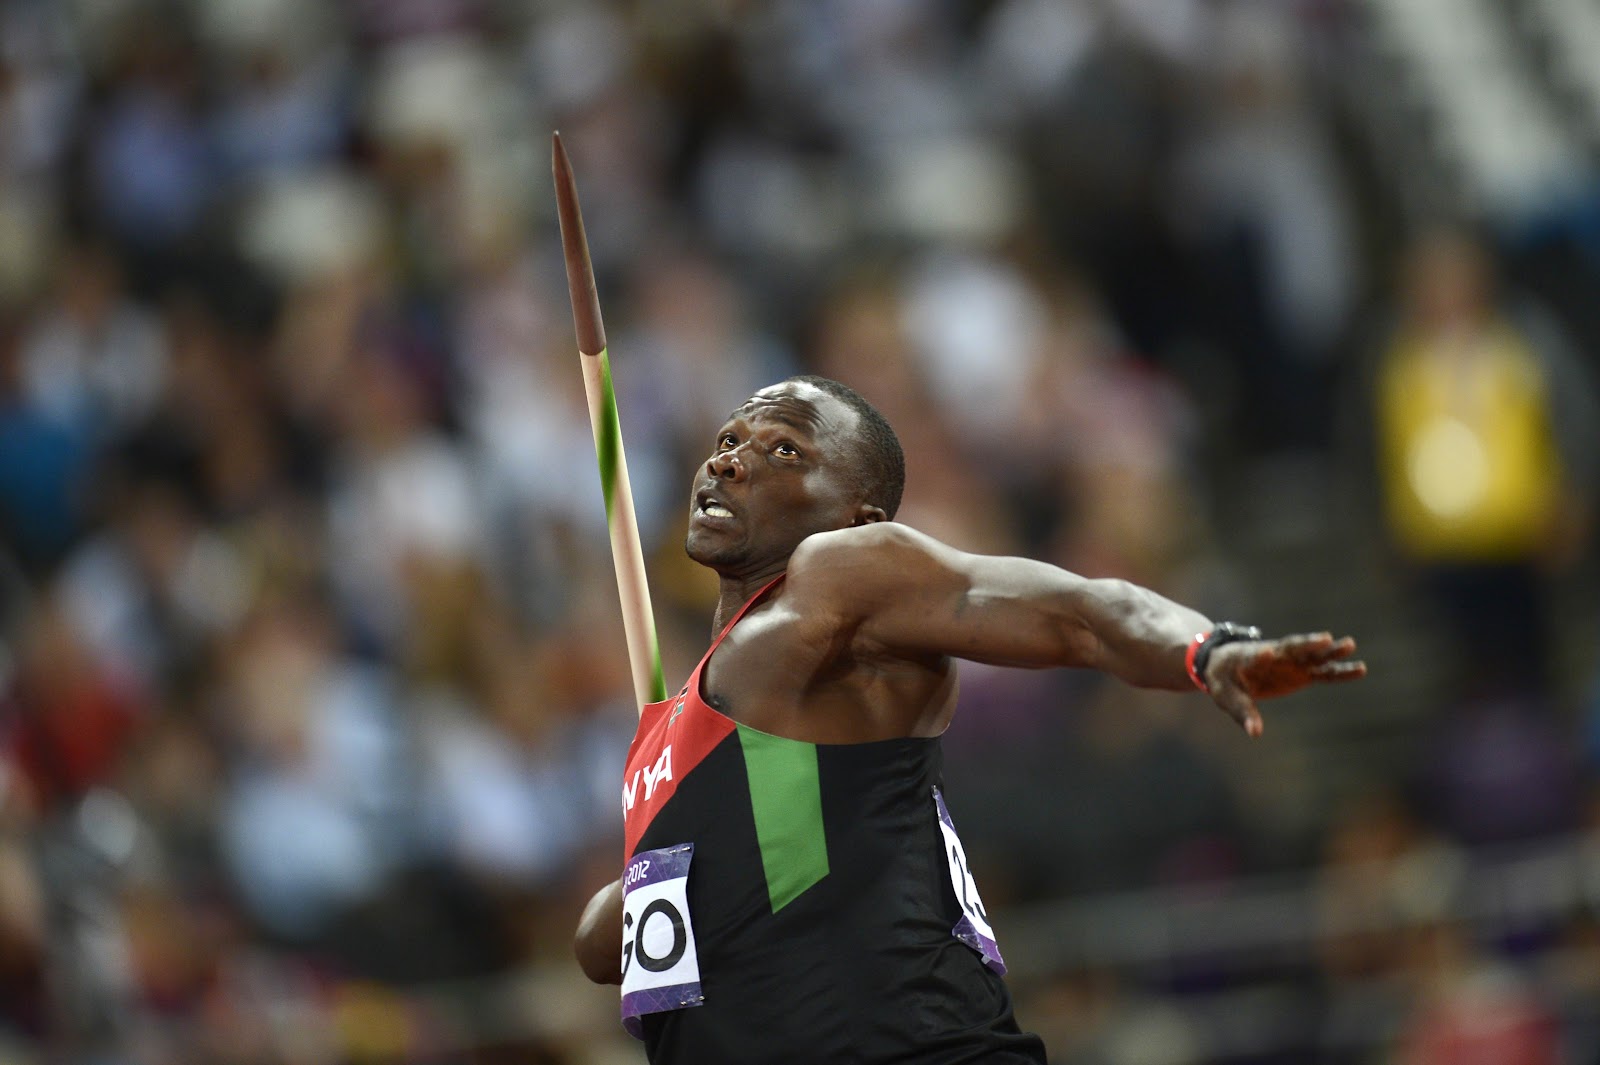  Julius Yego, el atleta que llegó a Rio 2016 gracias a YouTube